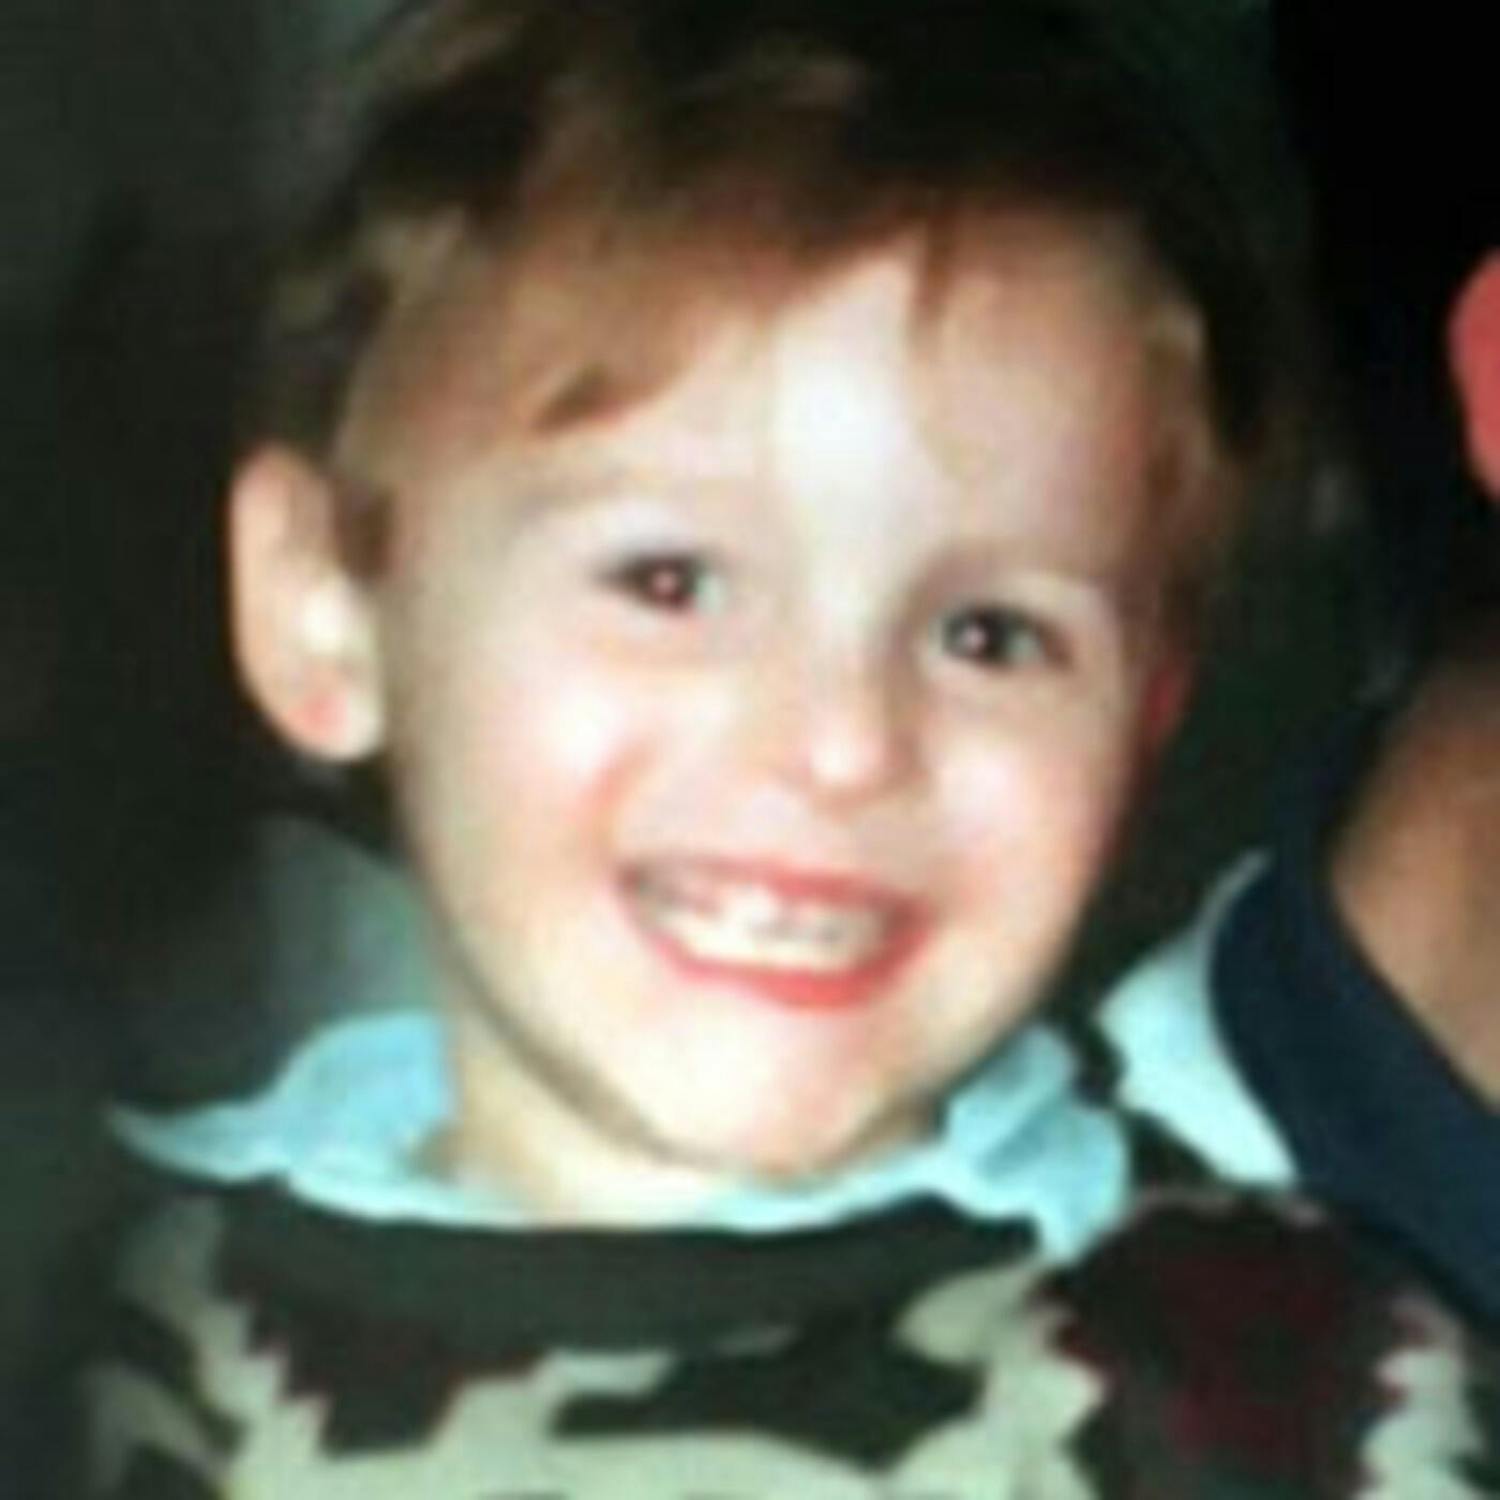 2 - Crimes against Children: The James Bulger murder